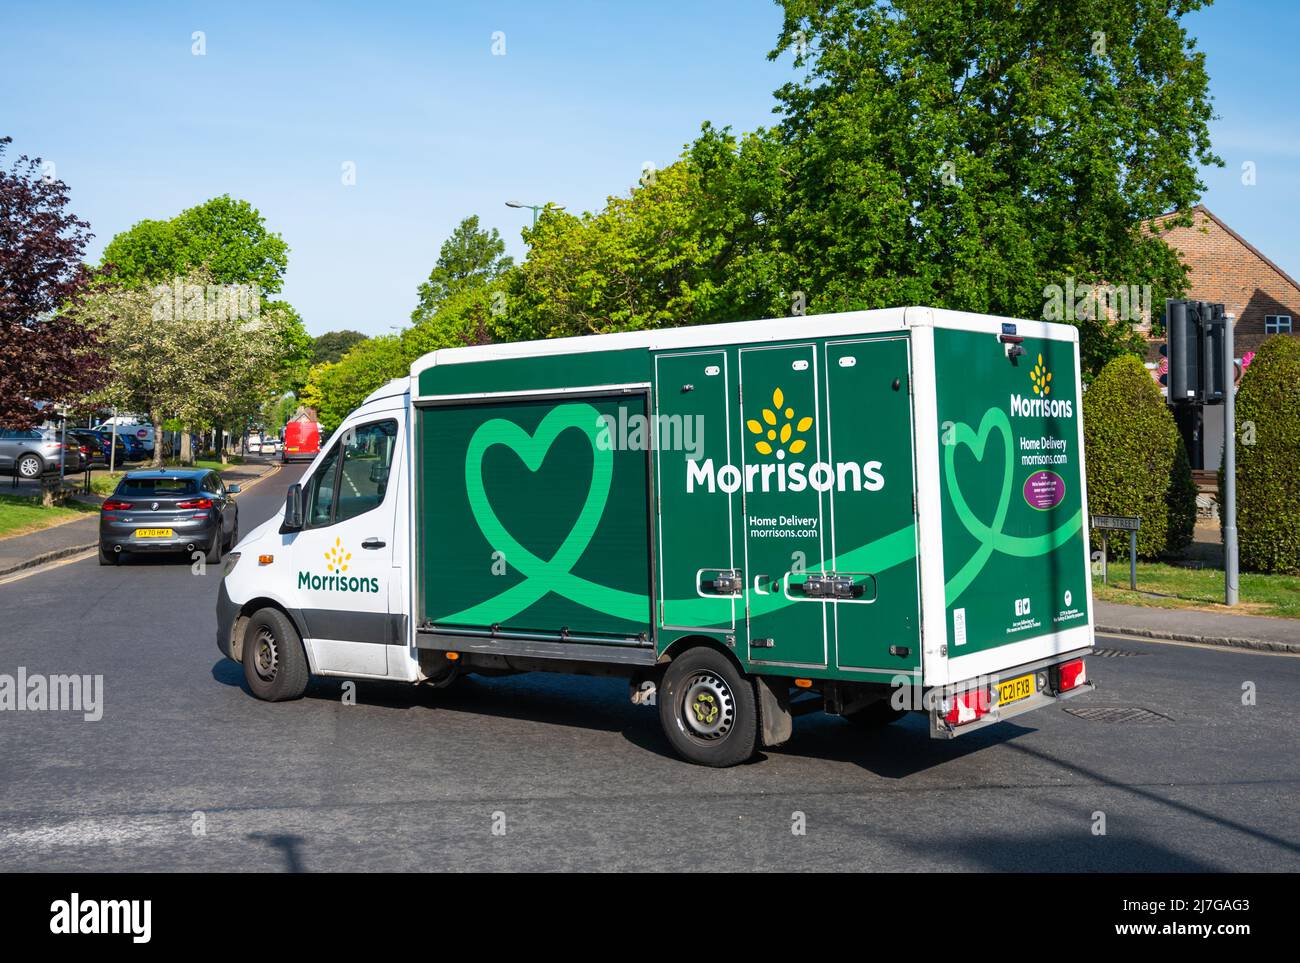 Fourgonnette de livraison de nourriture ou d'épicerie pour le magasin d'alimentation Morrisons sur la route pour livrer des produits d'épicerie aux clients en ligne dans West Sussex, Angleterre, Royaume-Uni. Banque D'Images